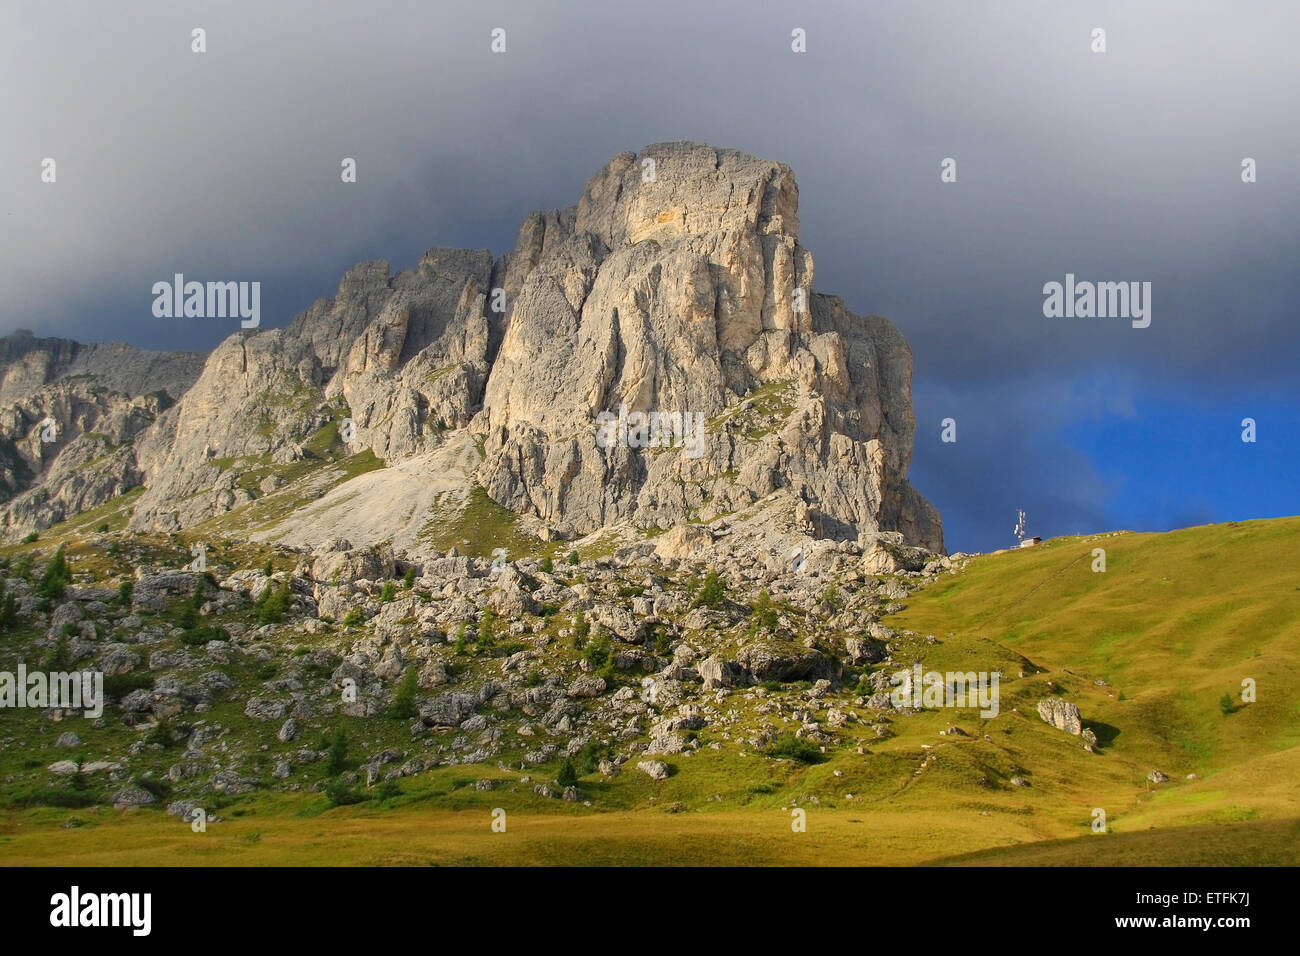 Blick auf die Imponent Gusela Nuvolau in der Nähe der Giau Pass in den Dolomiten, Italien. Stockfoto